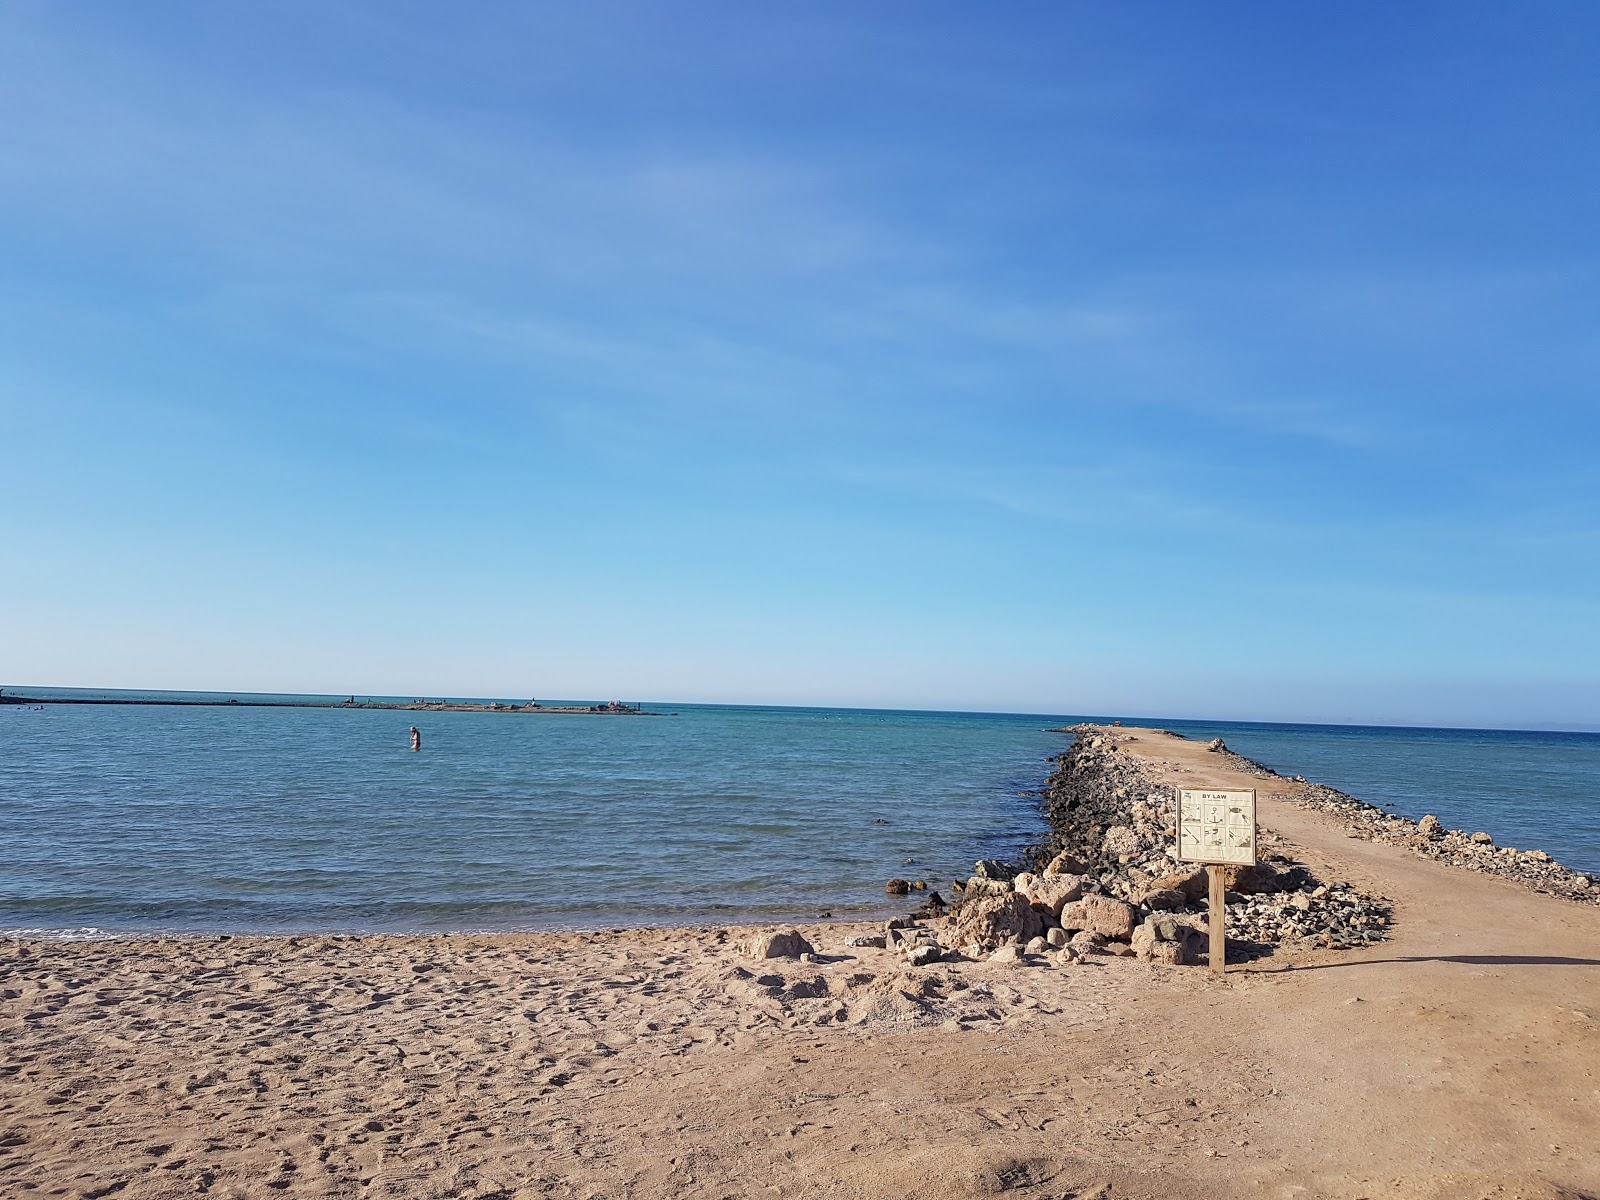 Foto de Turtles Beach Resort Hurghada com alto nível de limpeza